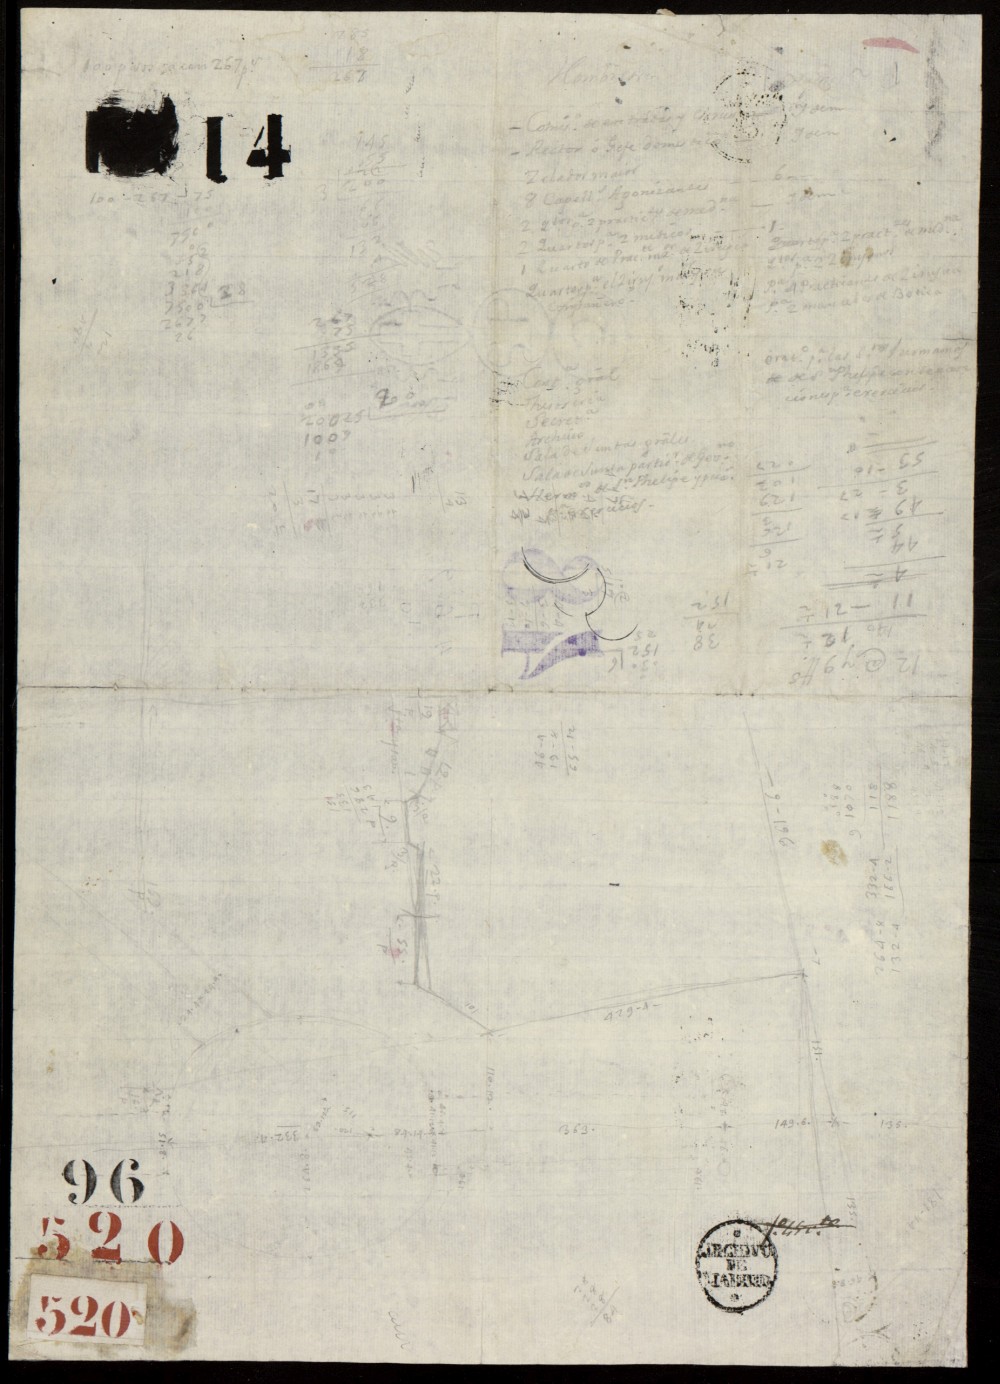 Croquis y anotaciones de la situación de las fuentes del Prado